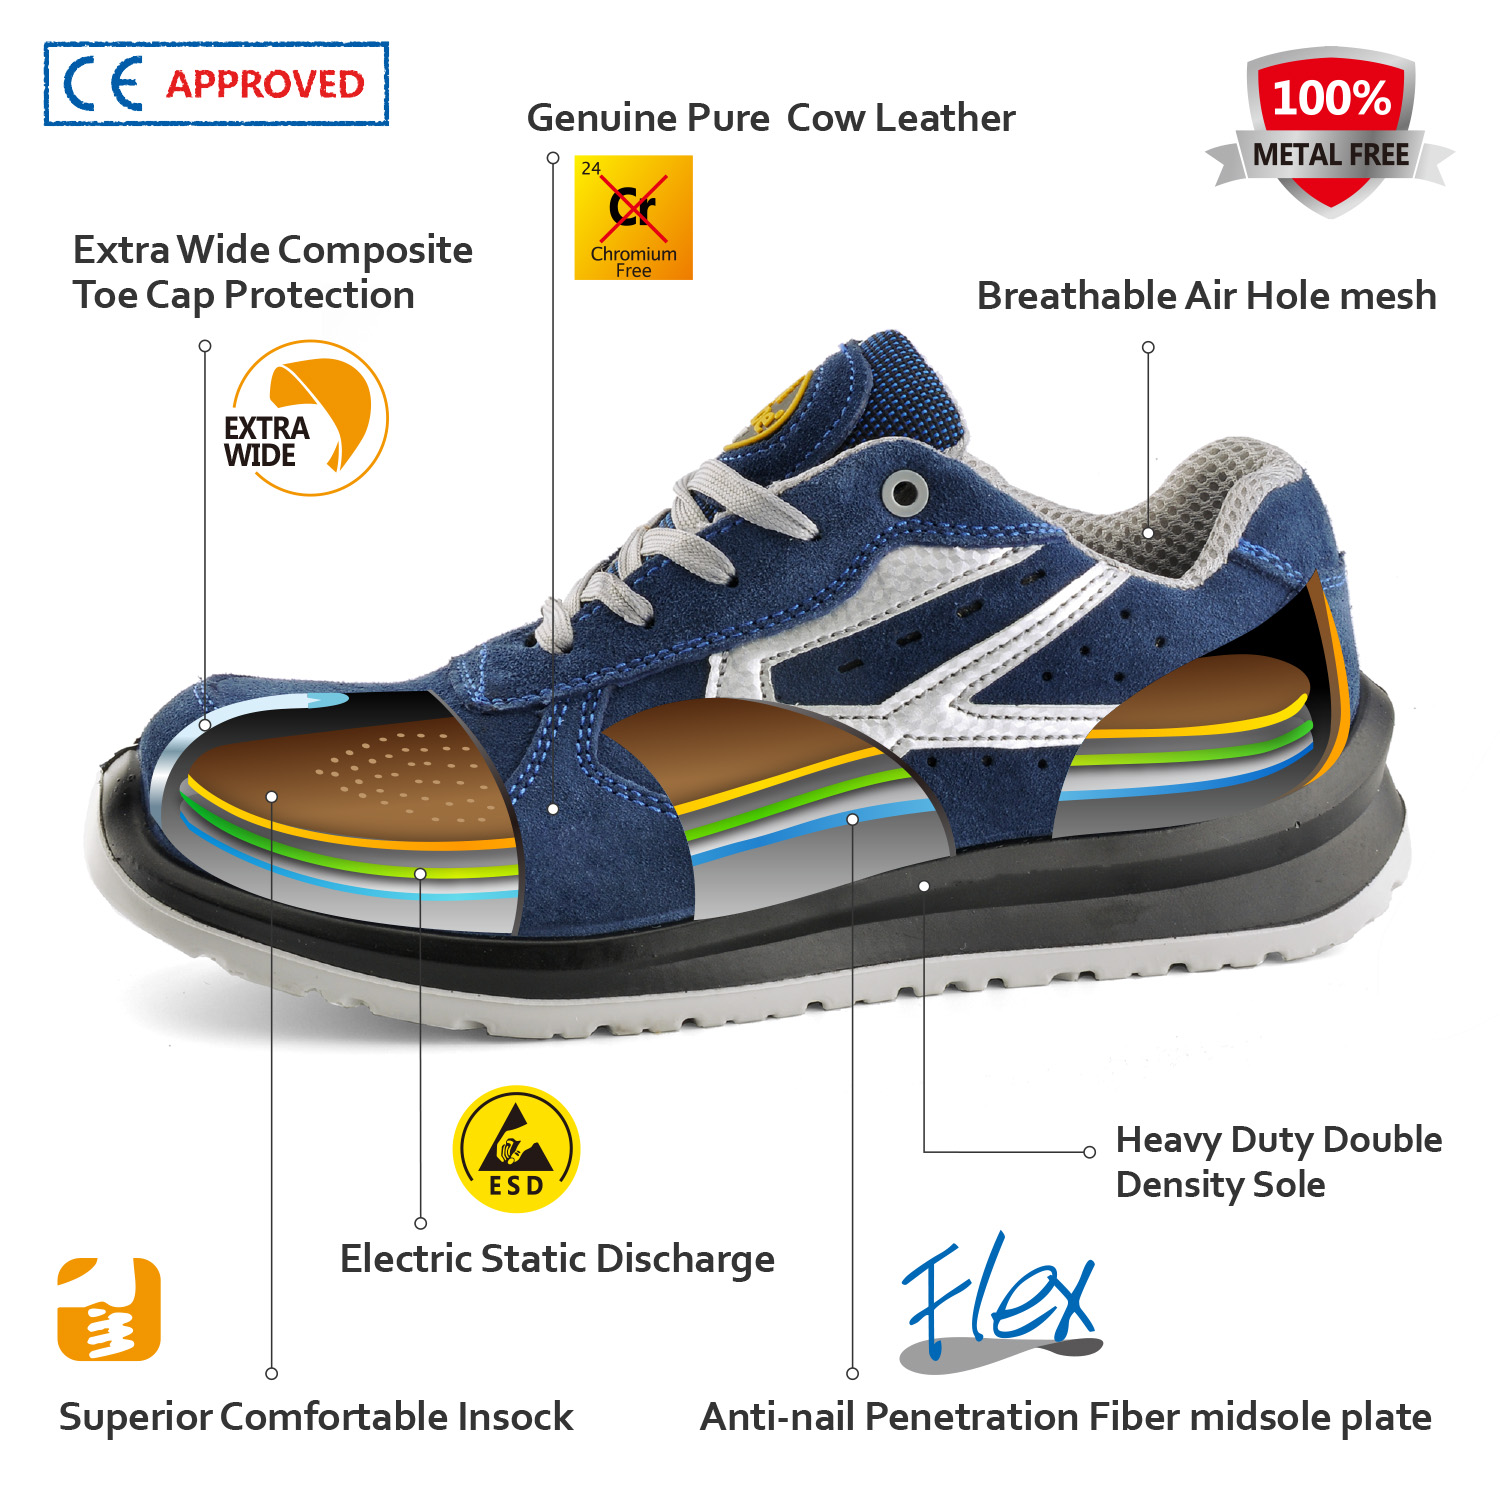 Zapatos de seguridad industrial aprobados por CE L-7328